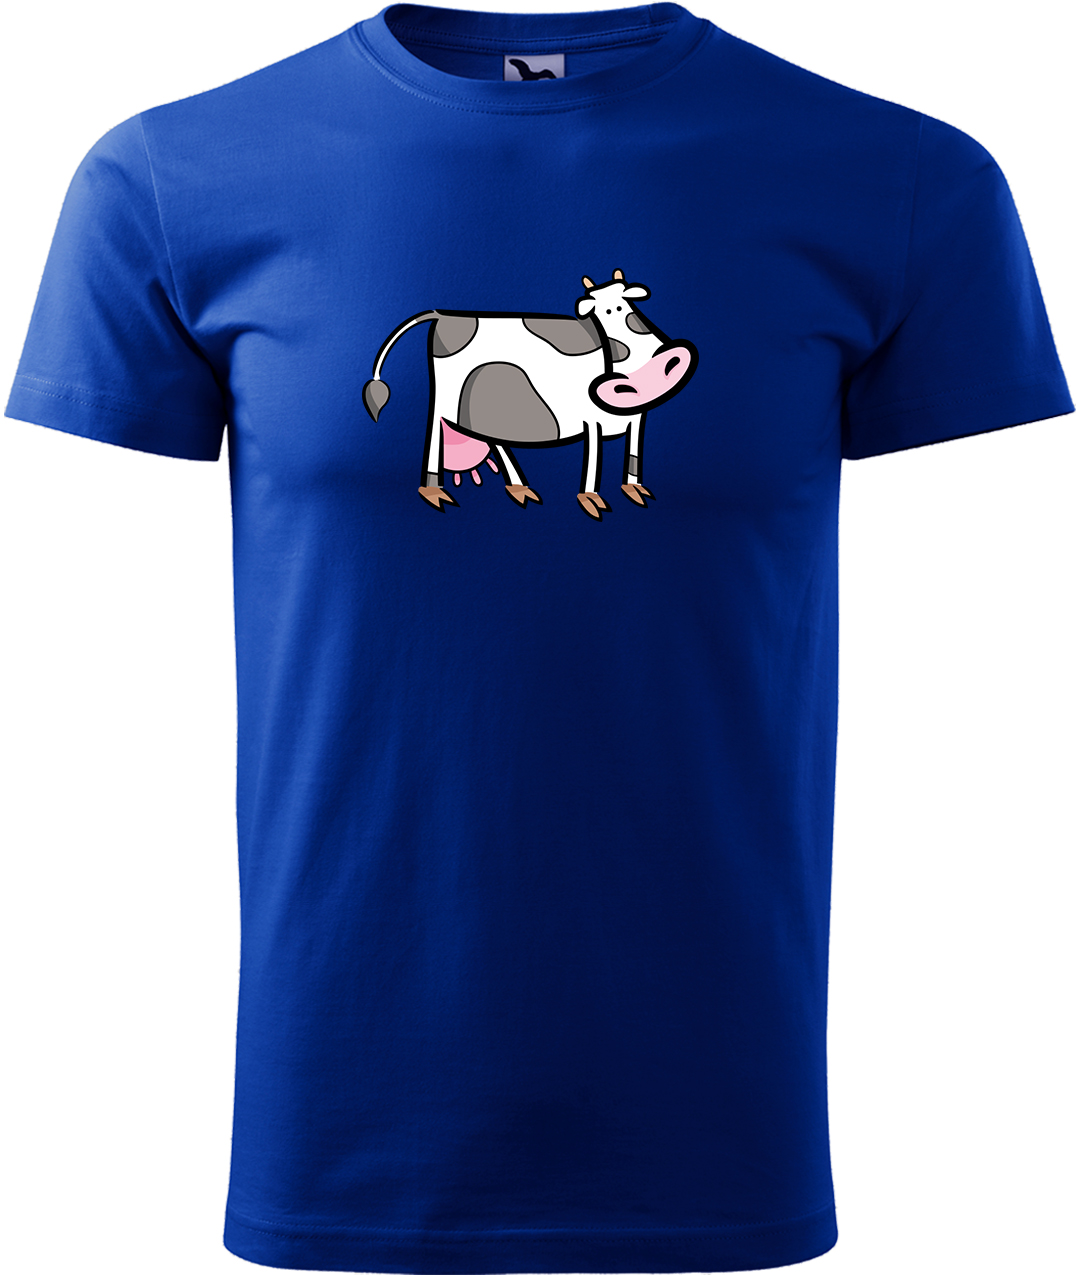 Pánské tričko s krávou - Kravička Velikost: XL, Barva: Královská modrá (05), Střih: pánský